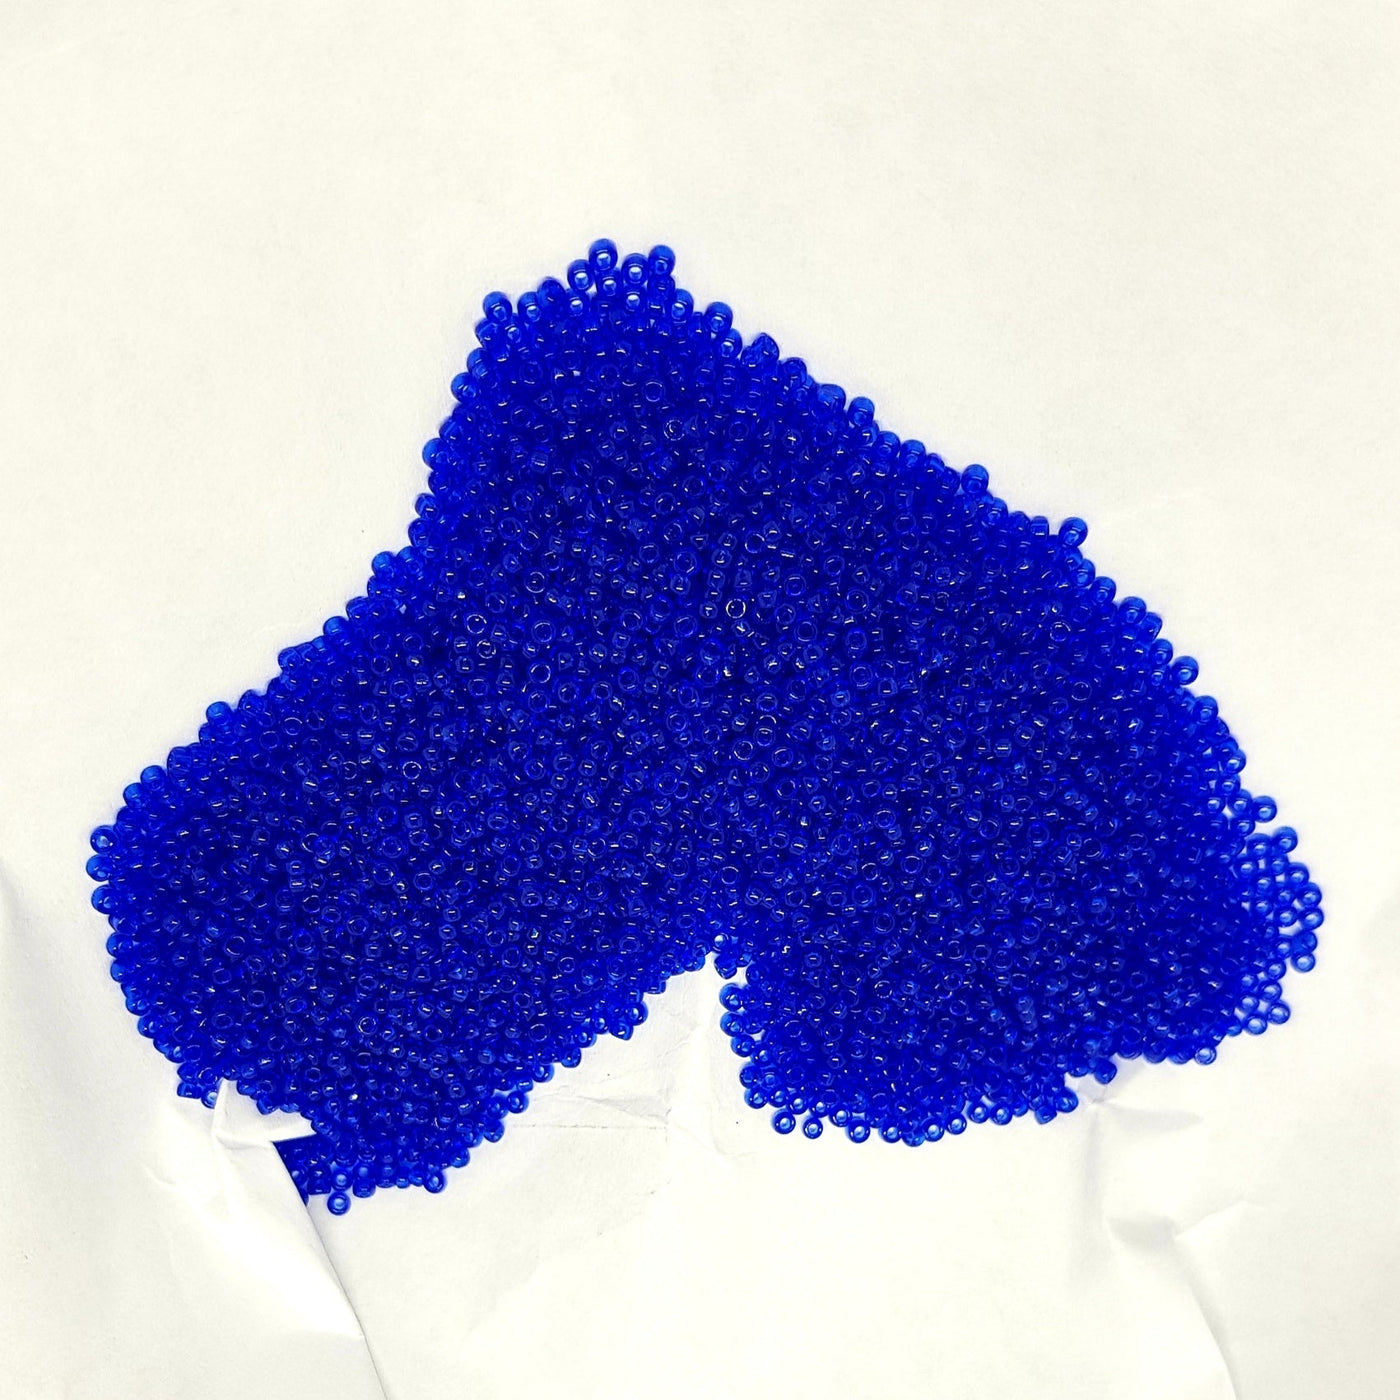 חרוזי מיוקי יפניים, גודל 15 - קטן ביותר (1.5 מ"מ) חור פנימי 0.7 מ"מ בצבע כחול ספיר שקוף